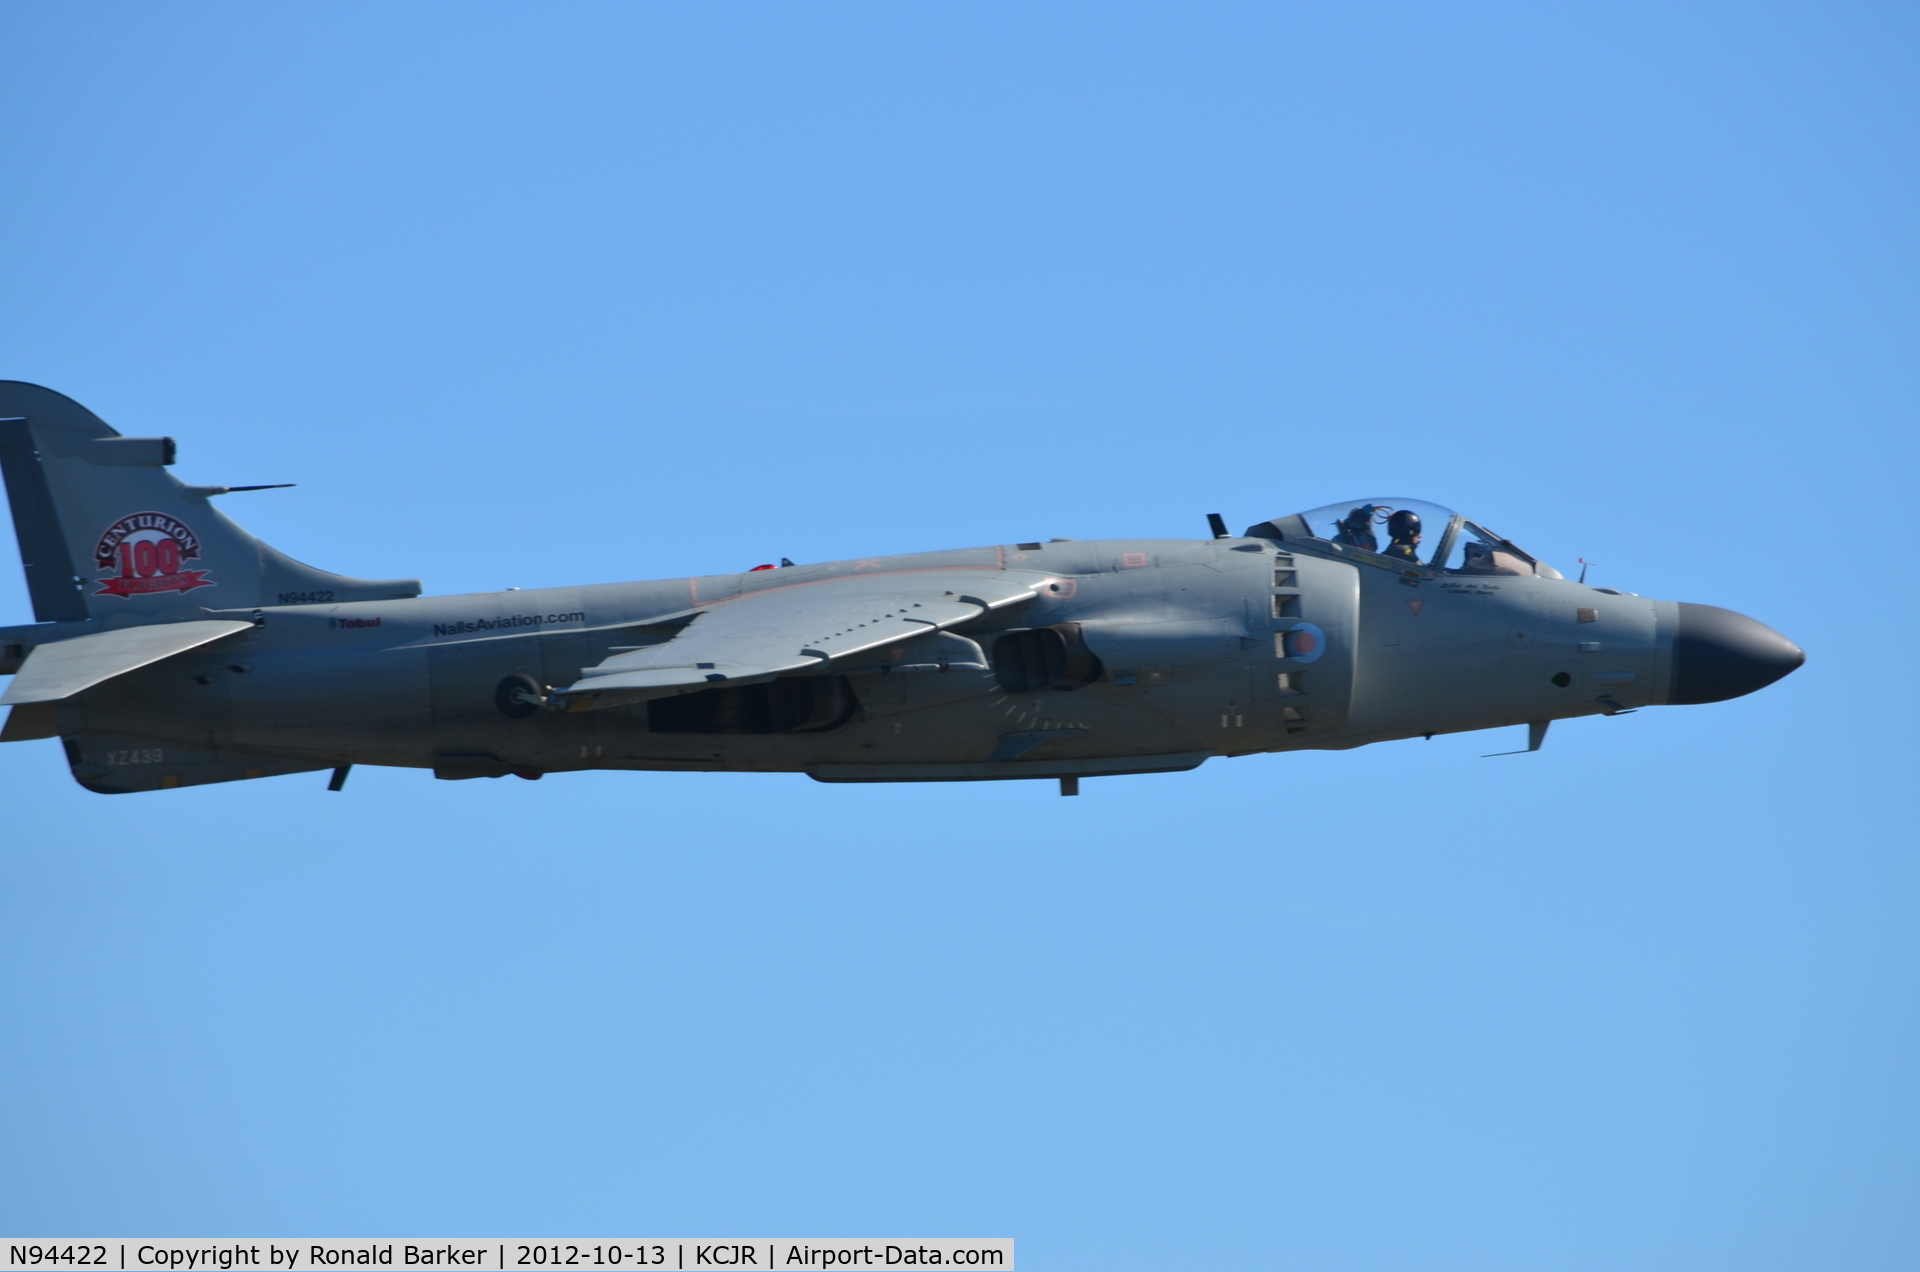 N94422, 1979 British Aerospace Sea Harrier F/A.2 C/N 41H-912002/DB2, Takeoff - Culpeper Air Fest 2012